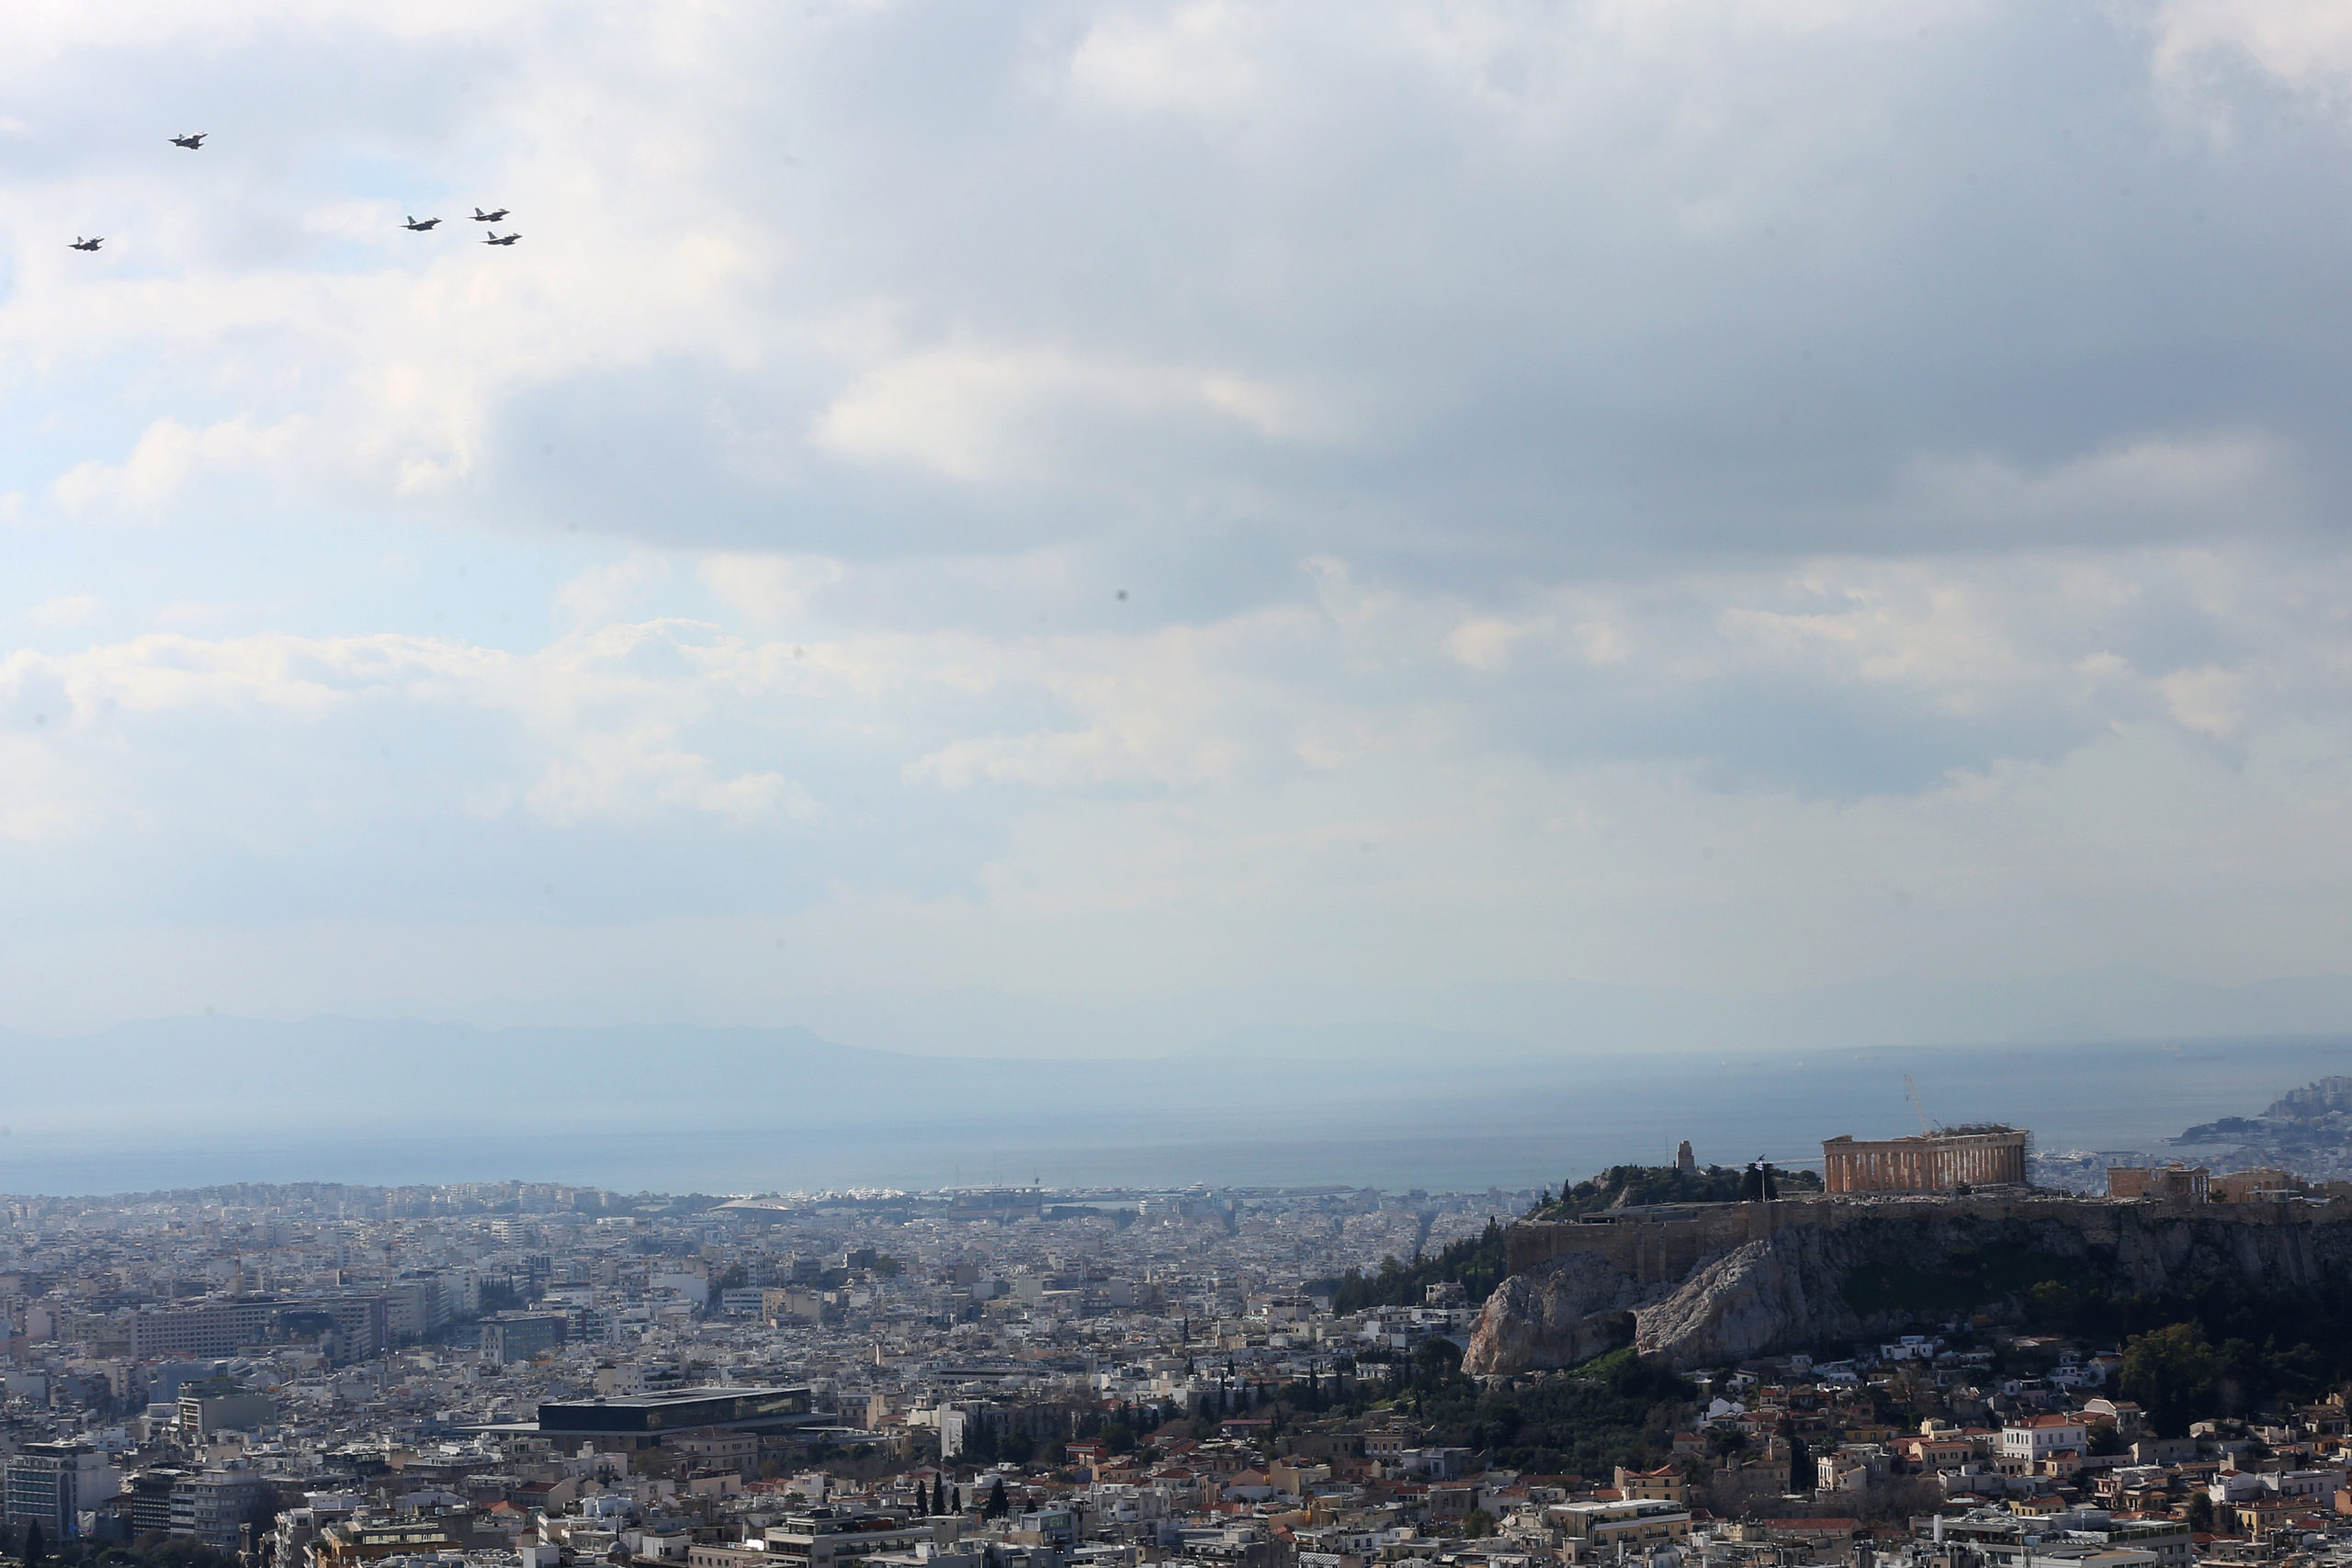 اليونان طائرات رافال - 'مرحبًا بكم في منزلكم': رسالة برج المراقبة الى طائرات رافال - صور فيديو